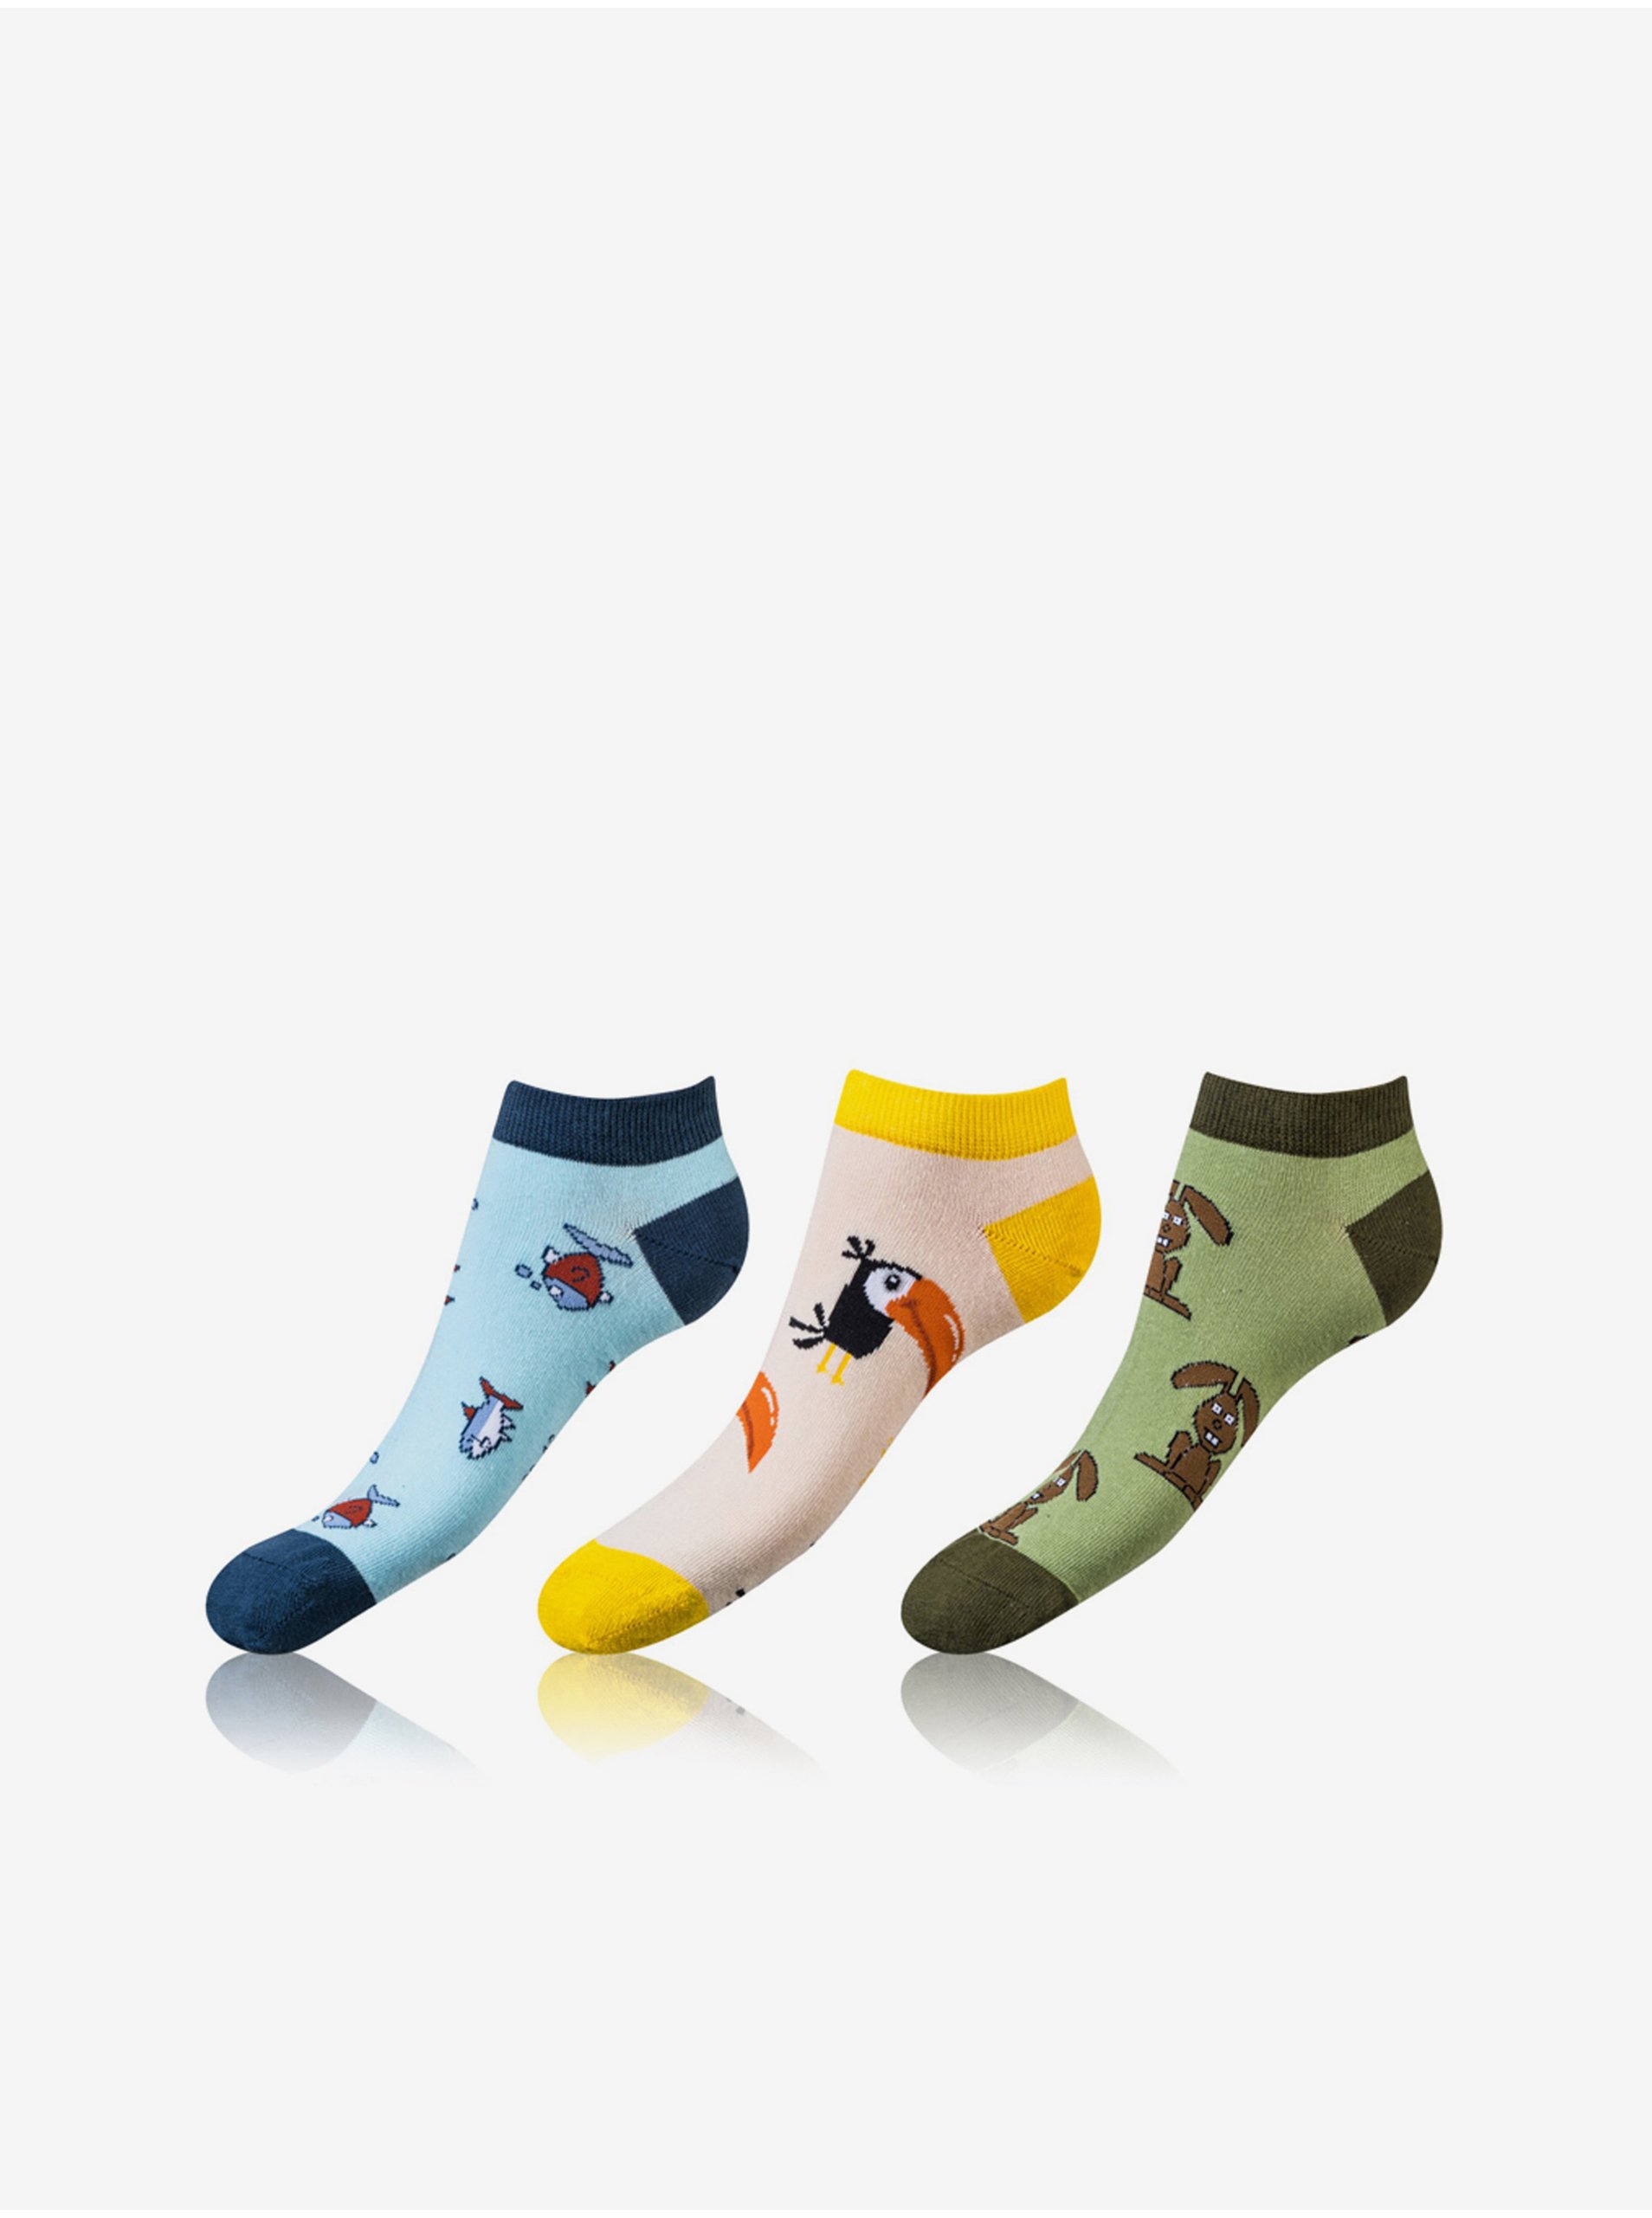 E-shop Sada tří párů unisex ponožek v modré, žluté a zelené barvě Bellinda CRAZY IN-SHOE SOCKS 3x